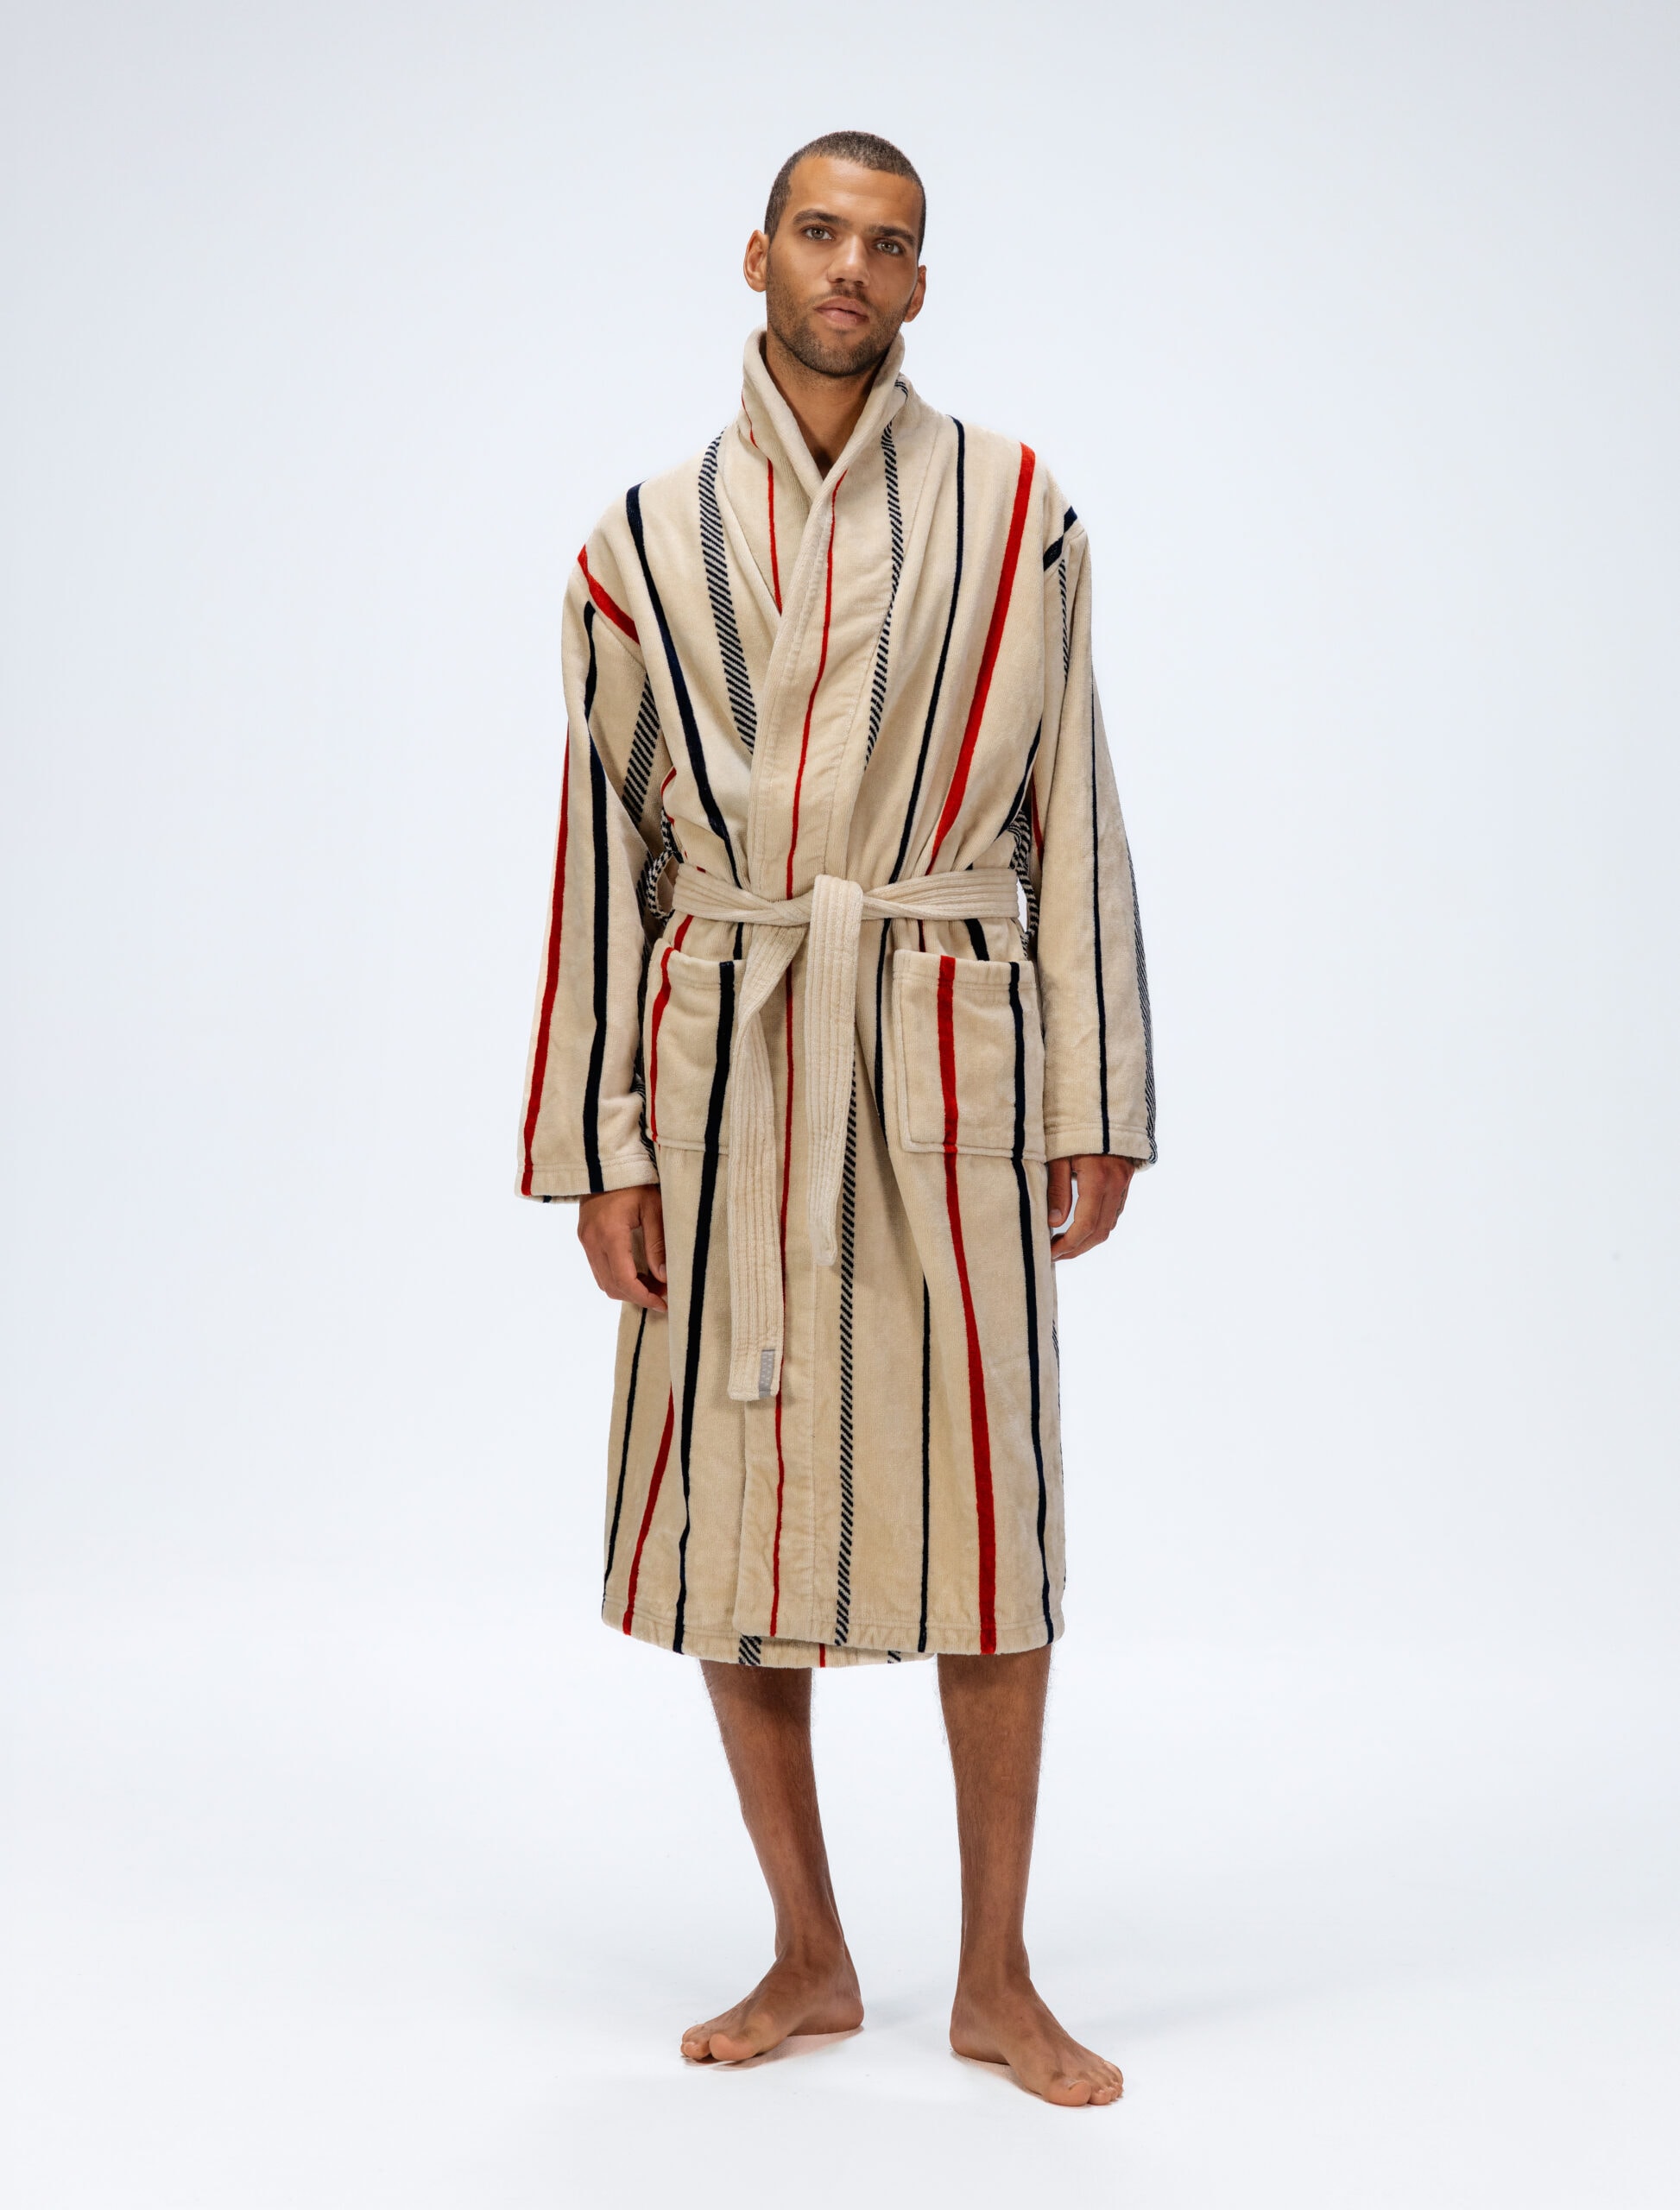 Men\'s bathrobe Koster Offwhite/Navy/Rust